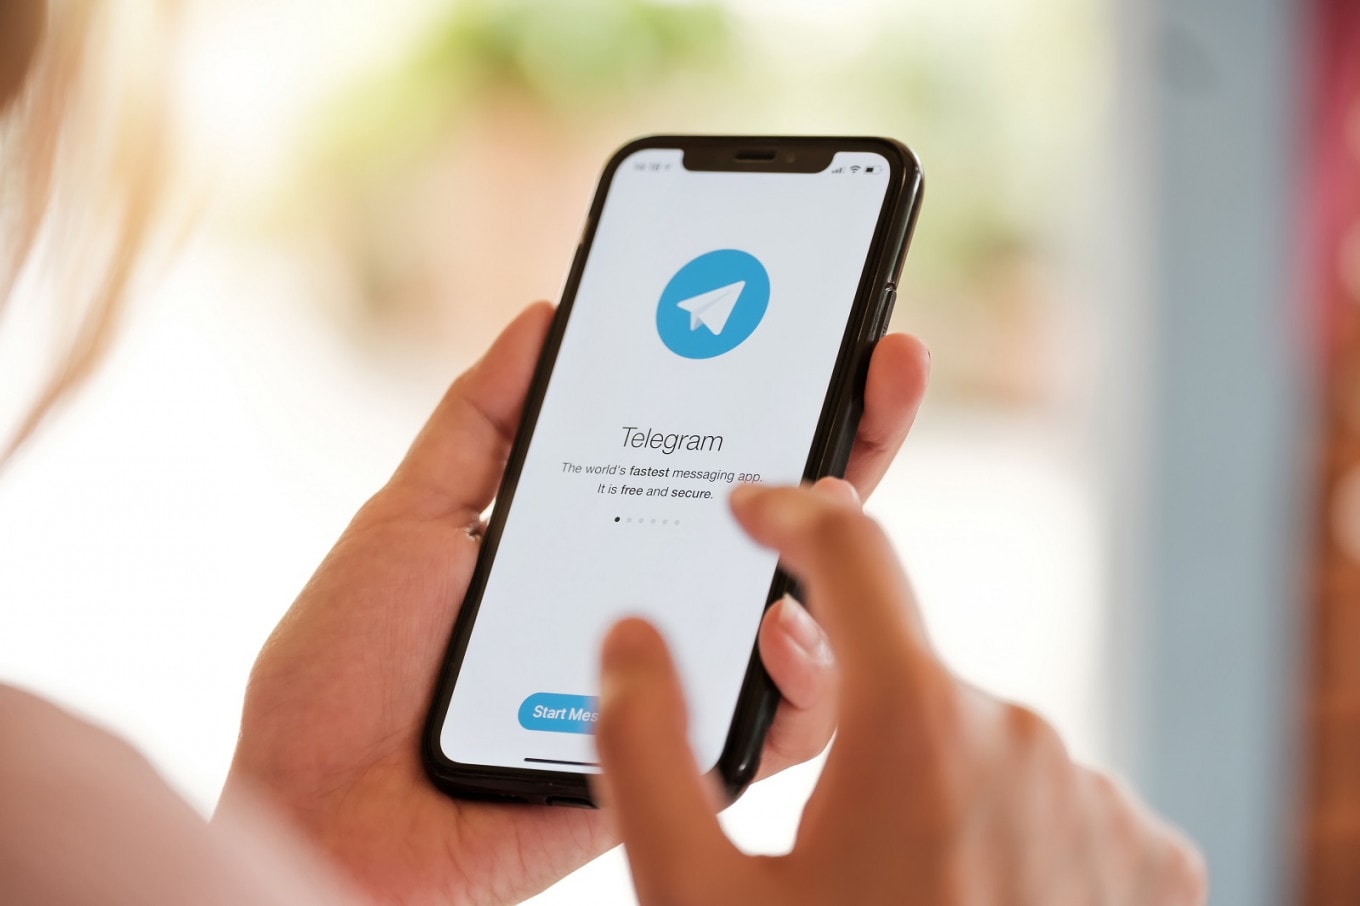 بلاک کردن در تلگرام و ترفندهای رفع بلاک تلگرام - چیکاو